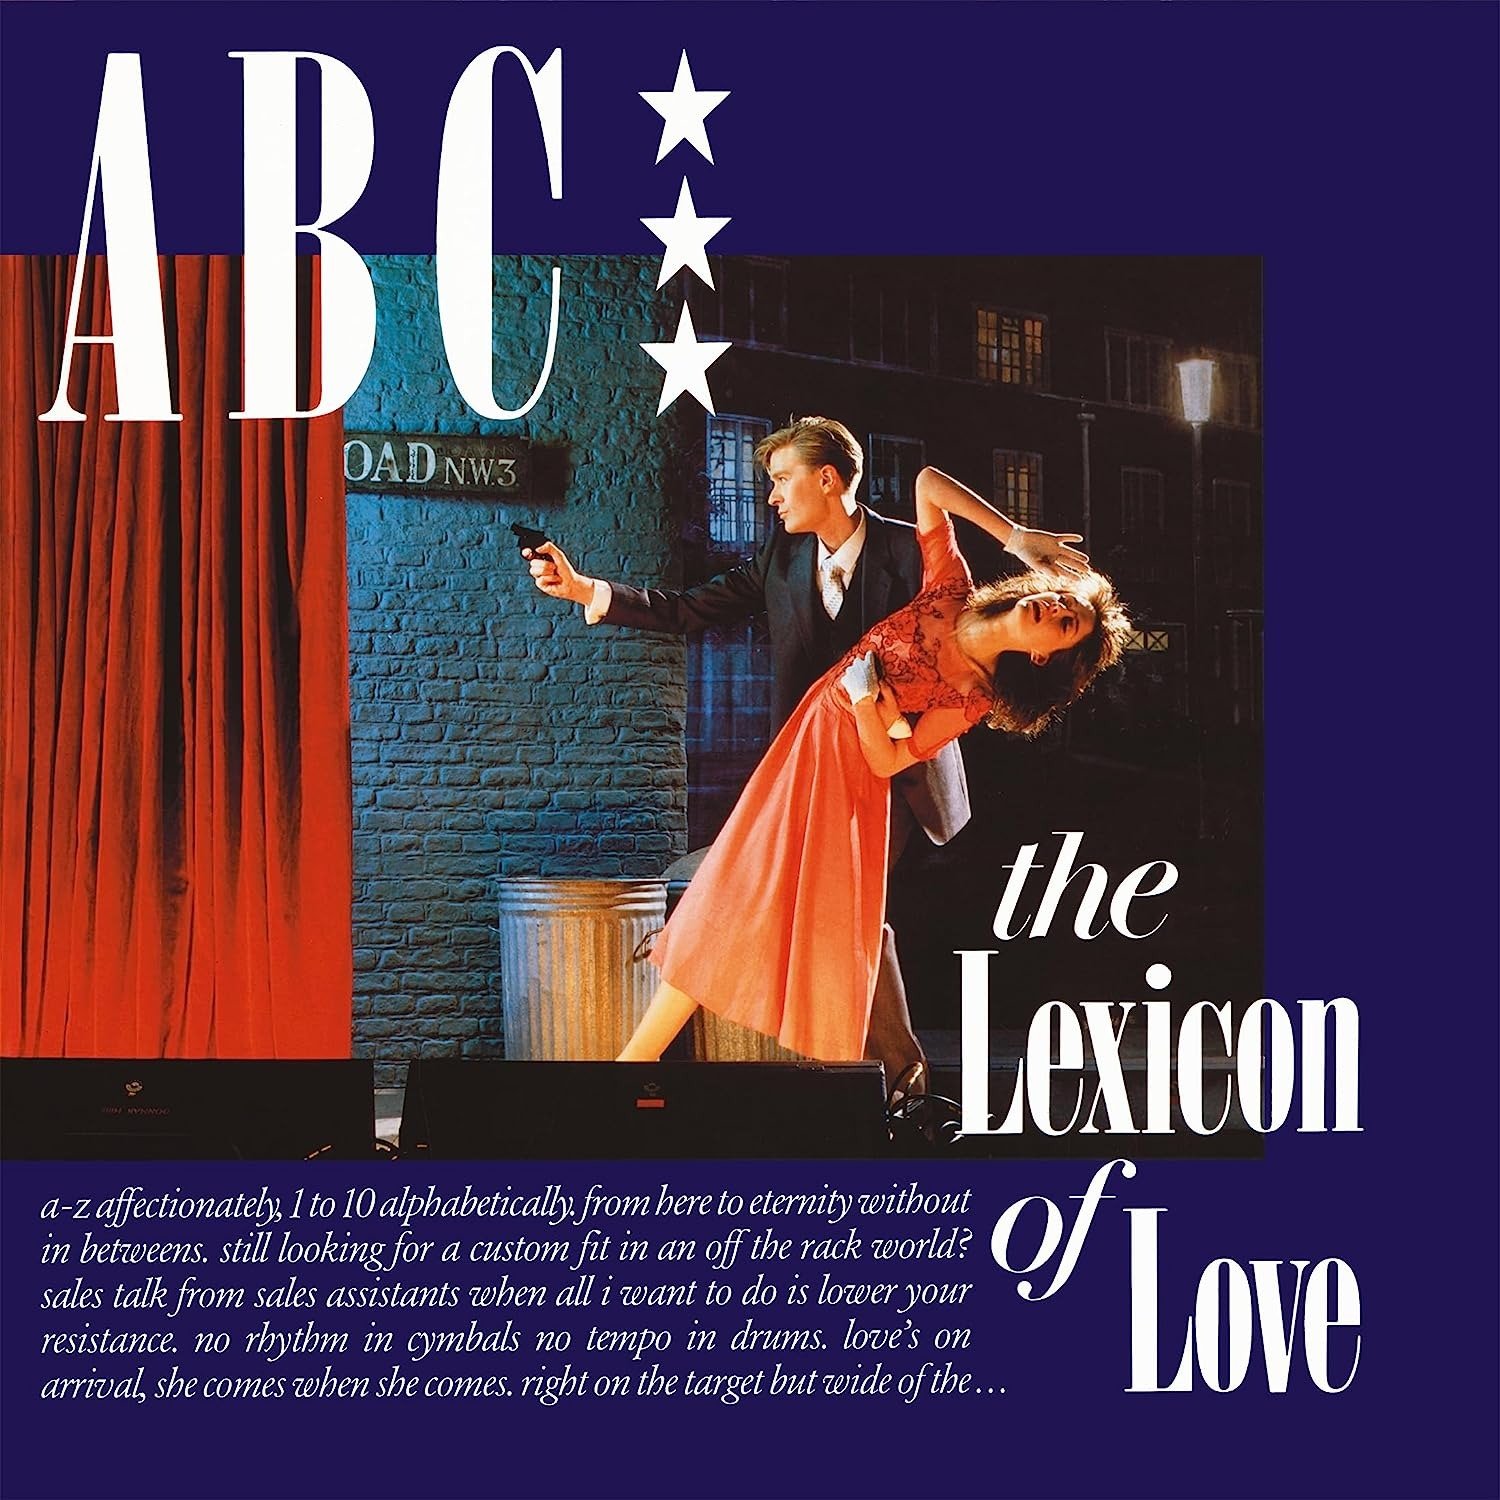 CD Shop - ABC LEXICON OF LOVE